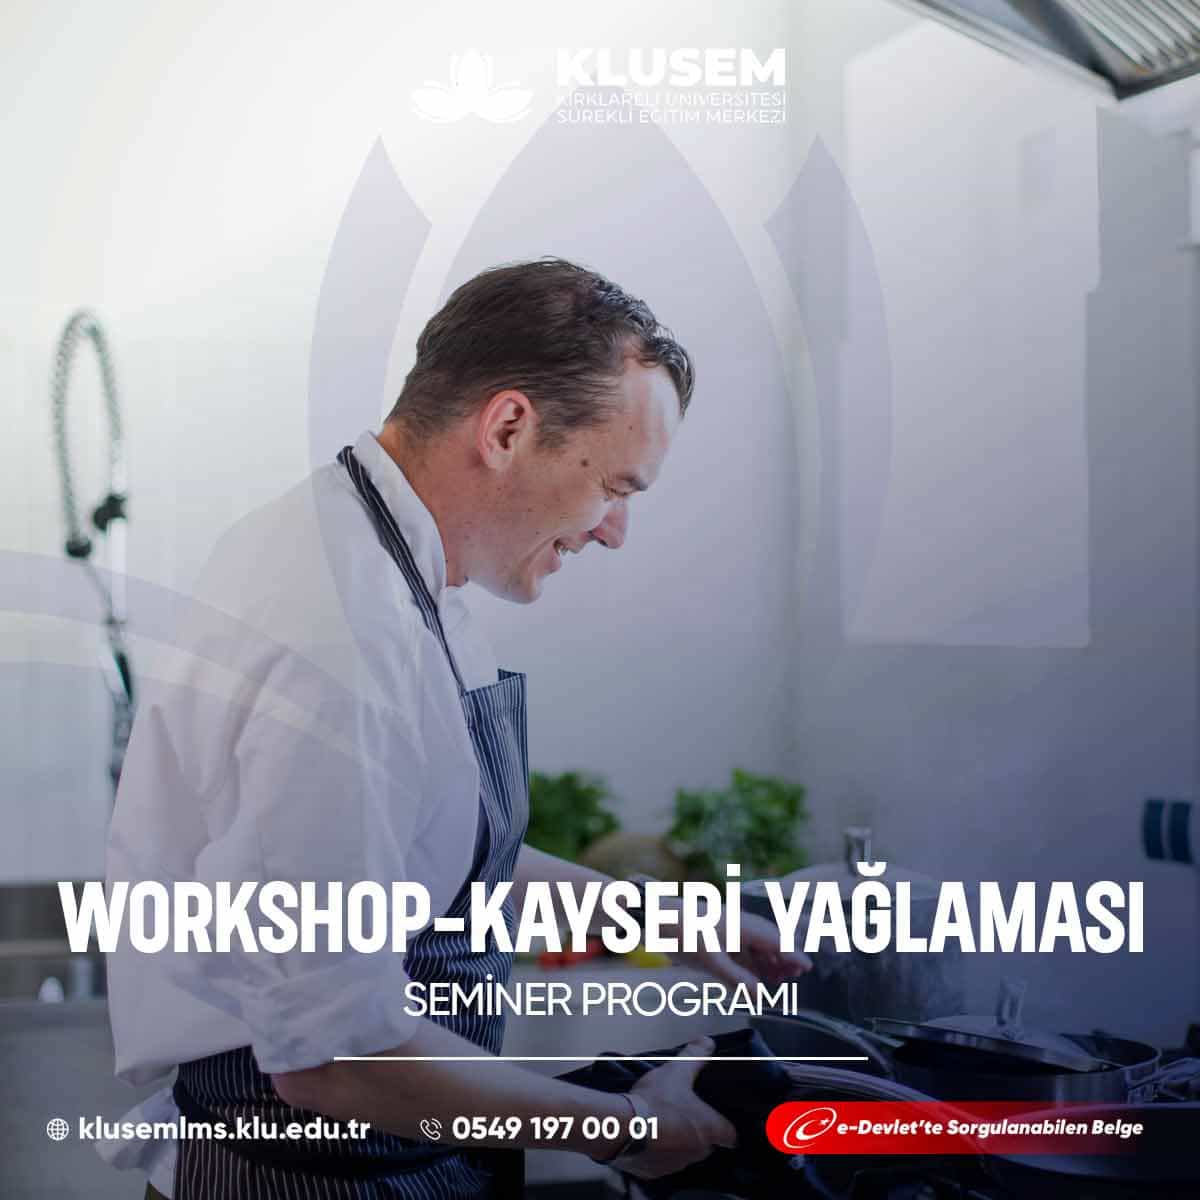 Kayseri yağlaması workshopları, Türk mutfağının özel bir tatlısı olan Kayseri yağlamasının yapımını öğretir.